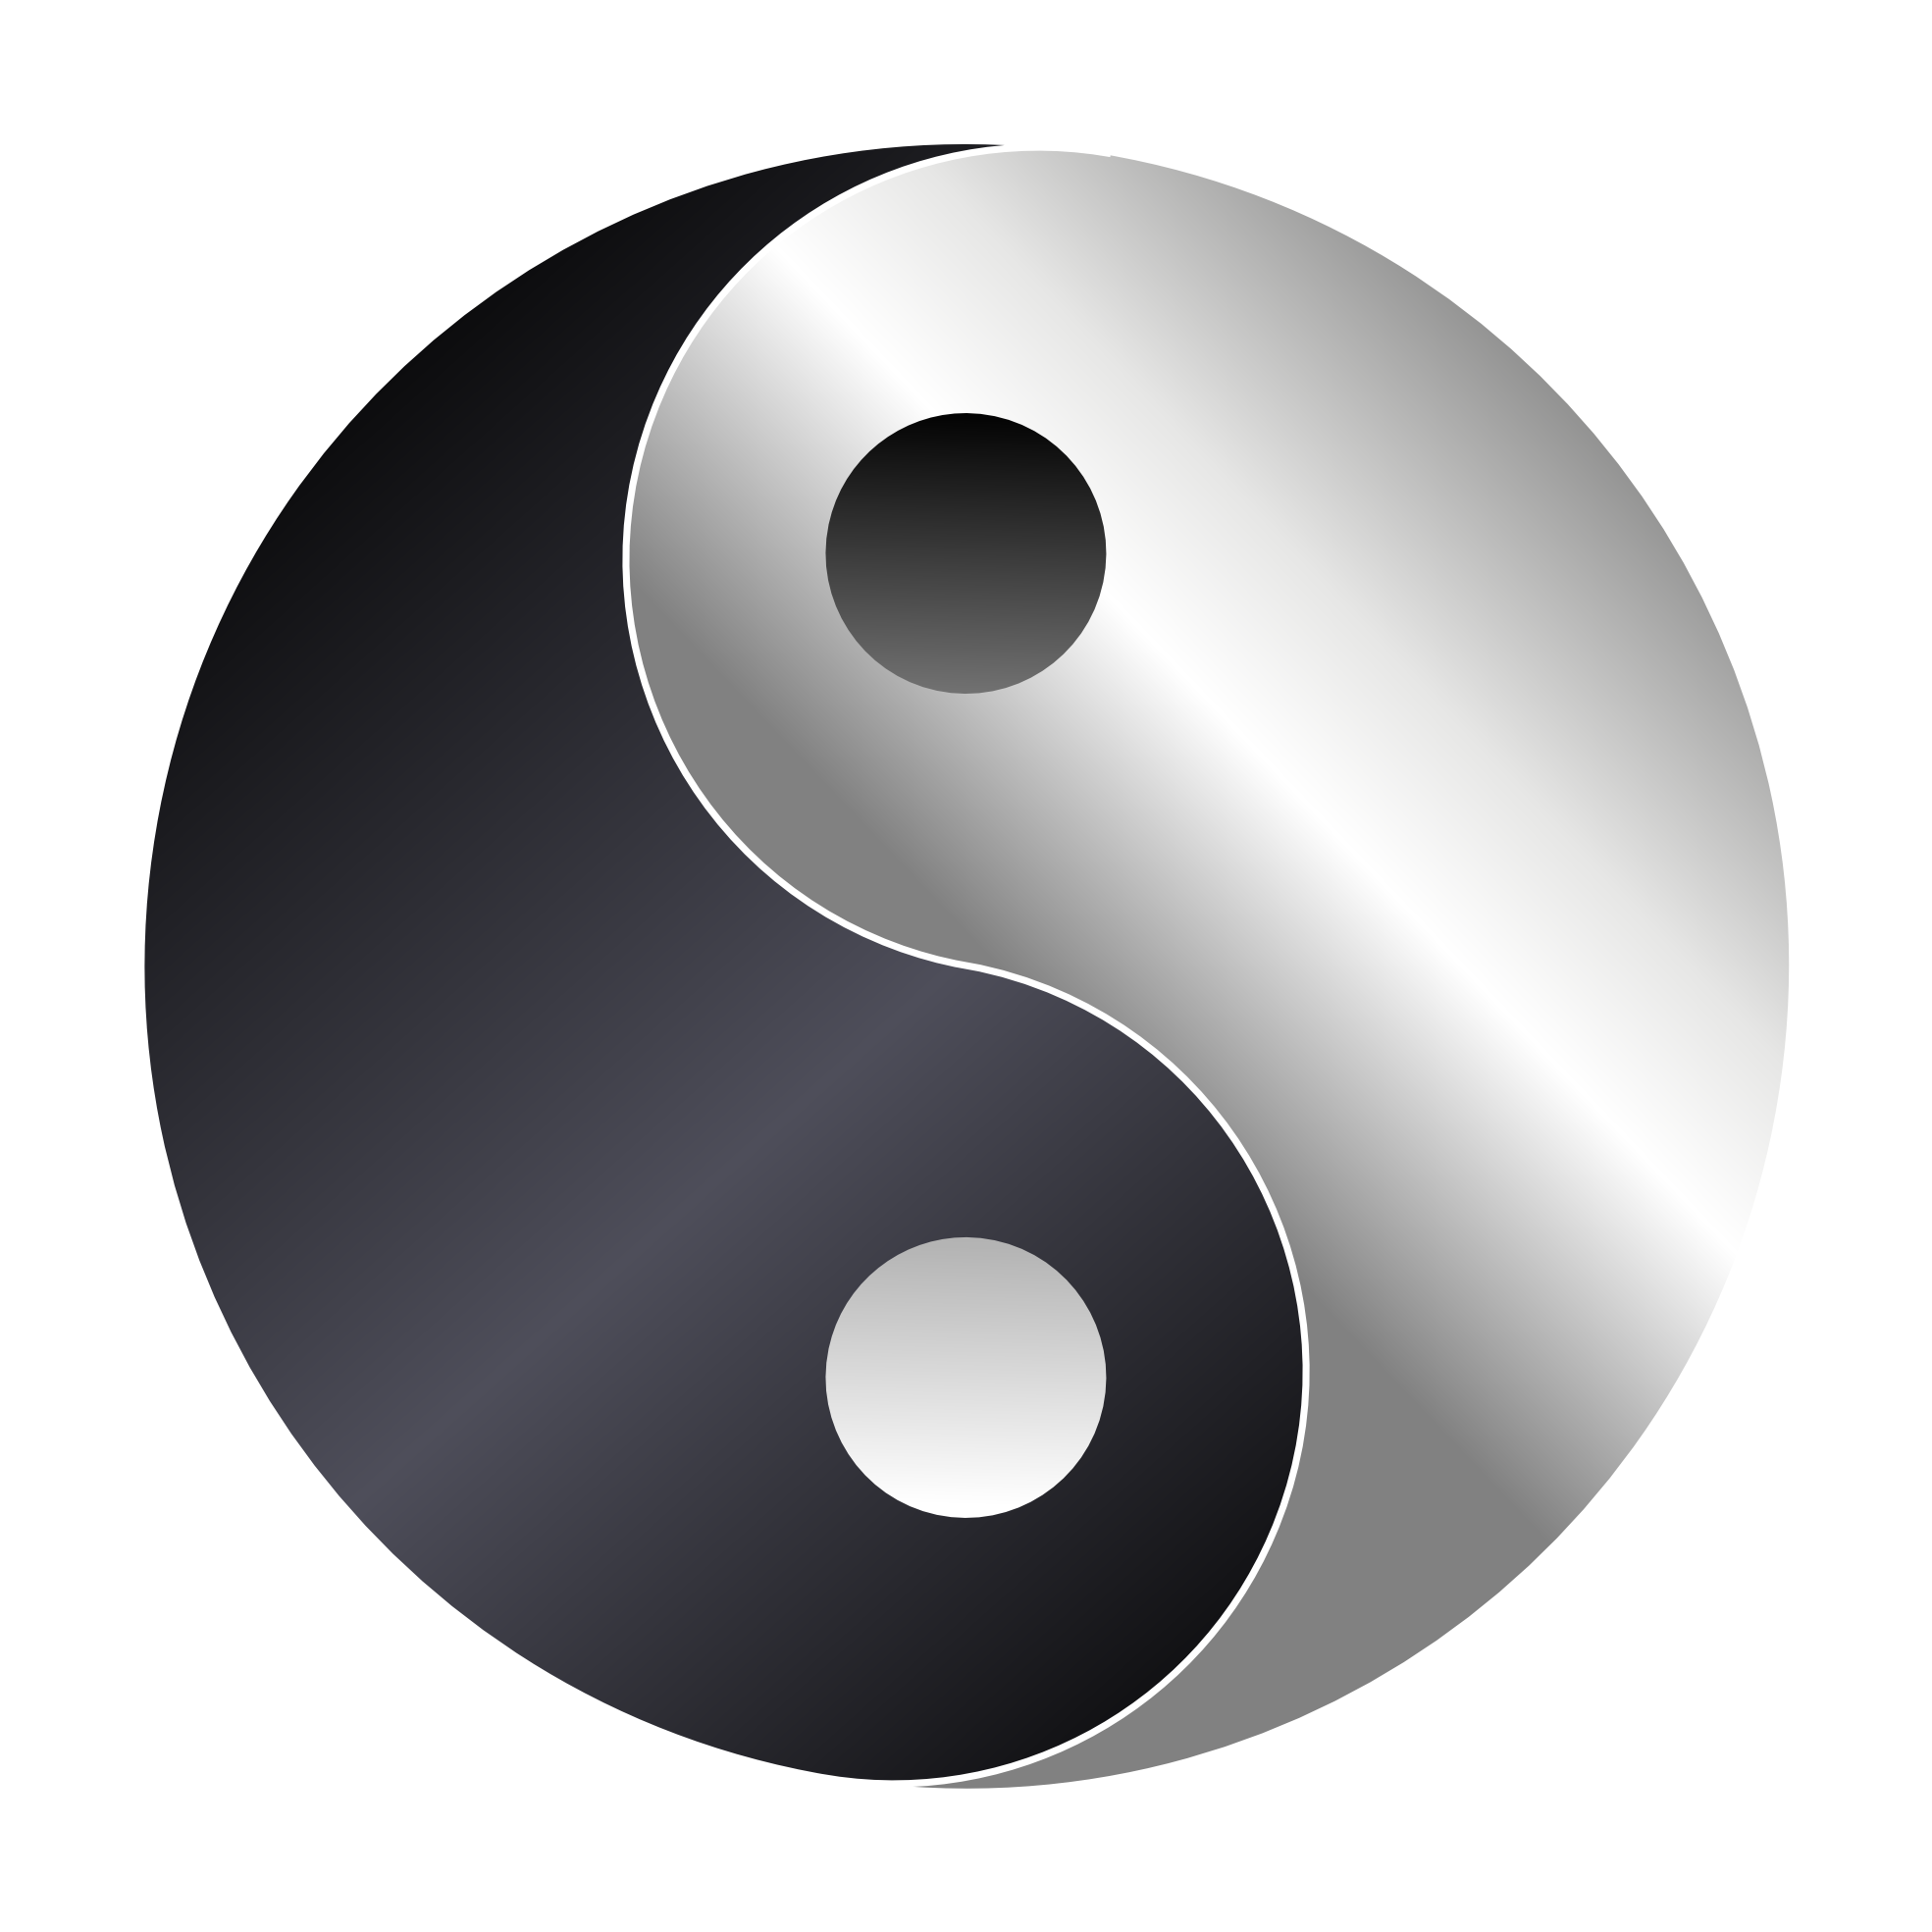 meditation clipart ying yang